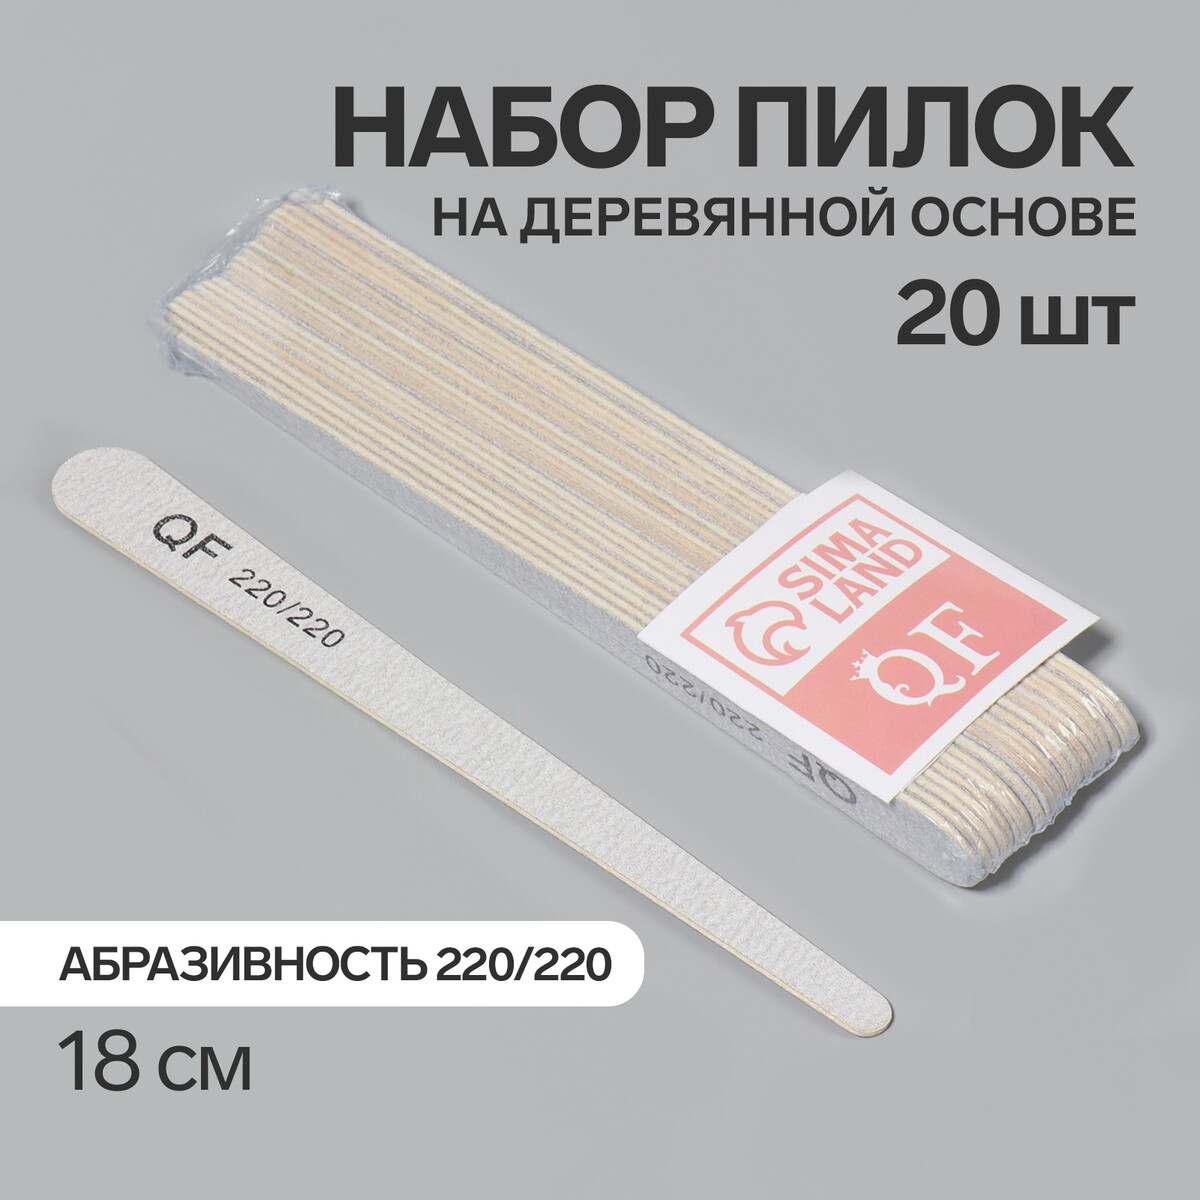 Пилка-наждак, набор 20 шт, деревянная основа, абразивность 220/220, 18 см, цвет серый основа и сменные файлы для пилки 18 см абразивность 240 10 шт